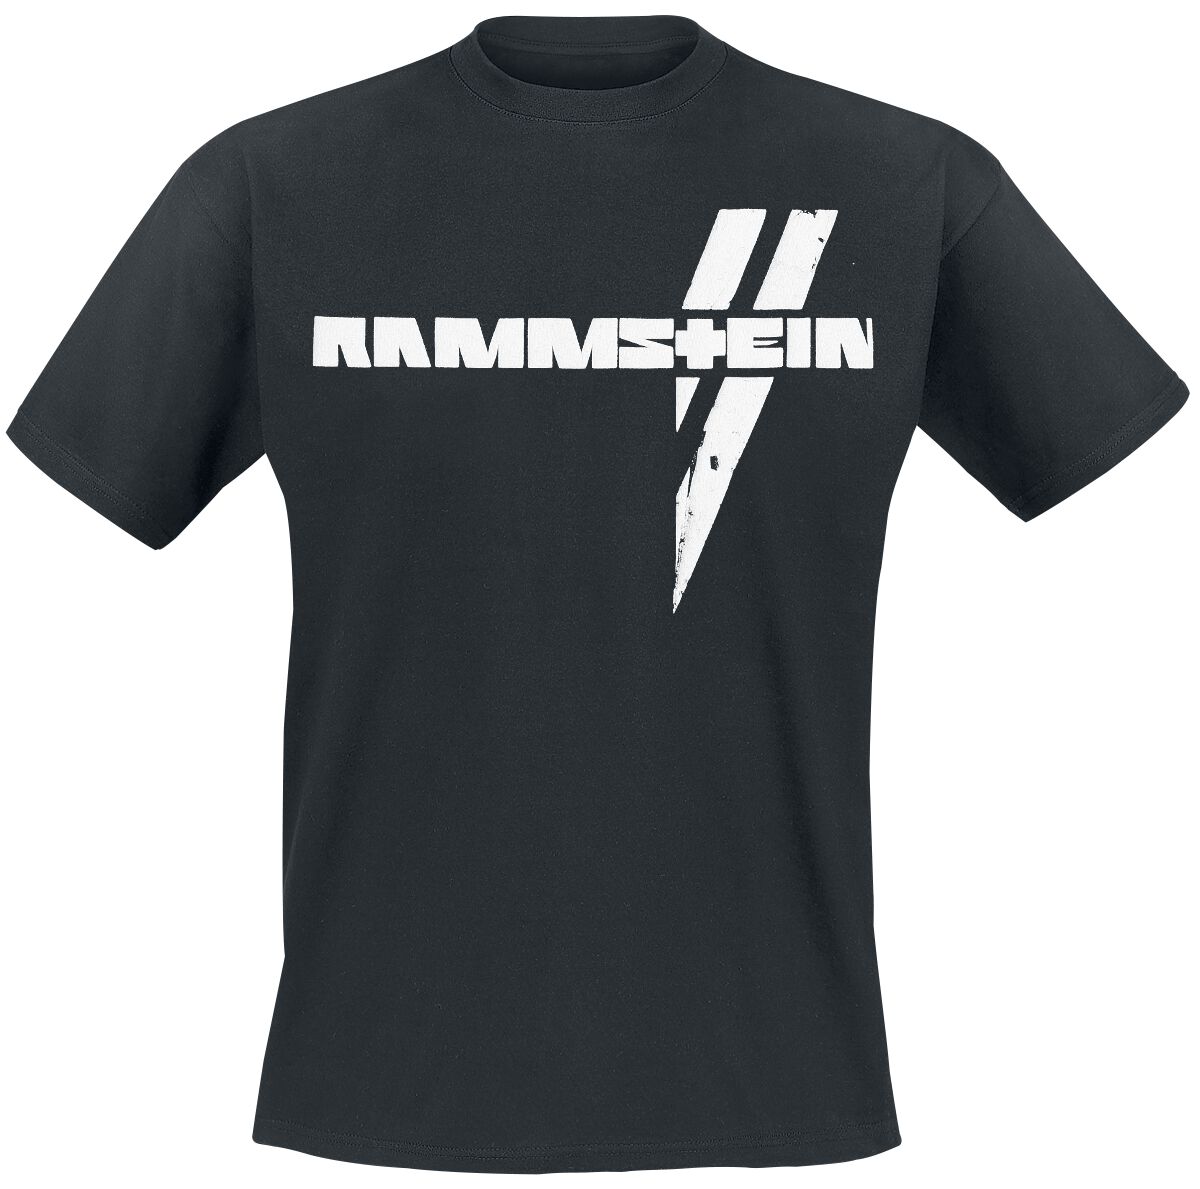 Rammstein T-Shirt - Weiße Balken - S bis 5XL - für Männer - Größe L - schwarz  - Lizenziertes Merchandise!